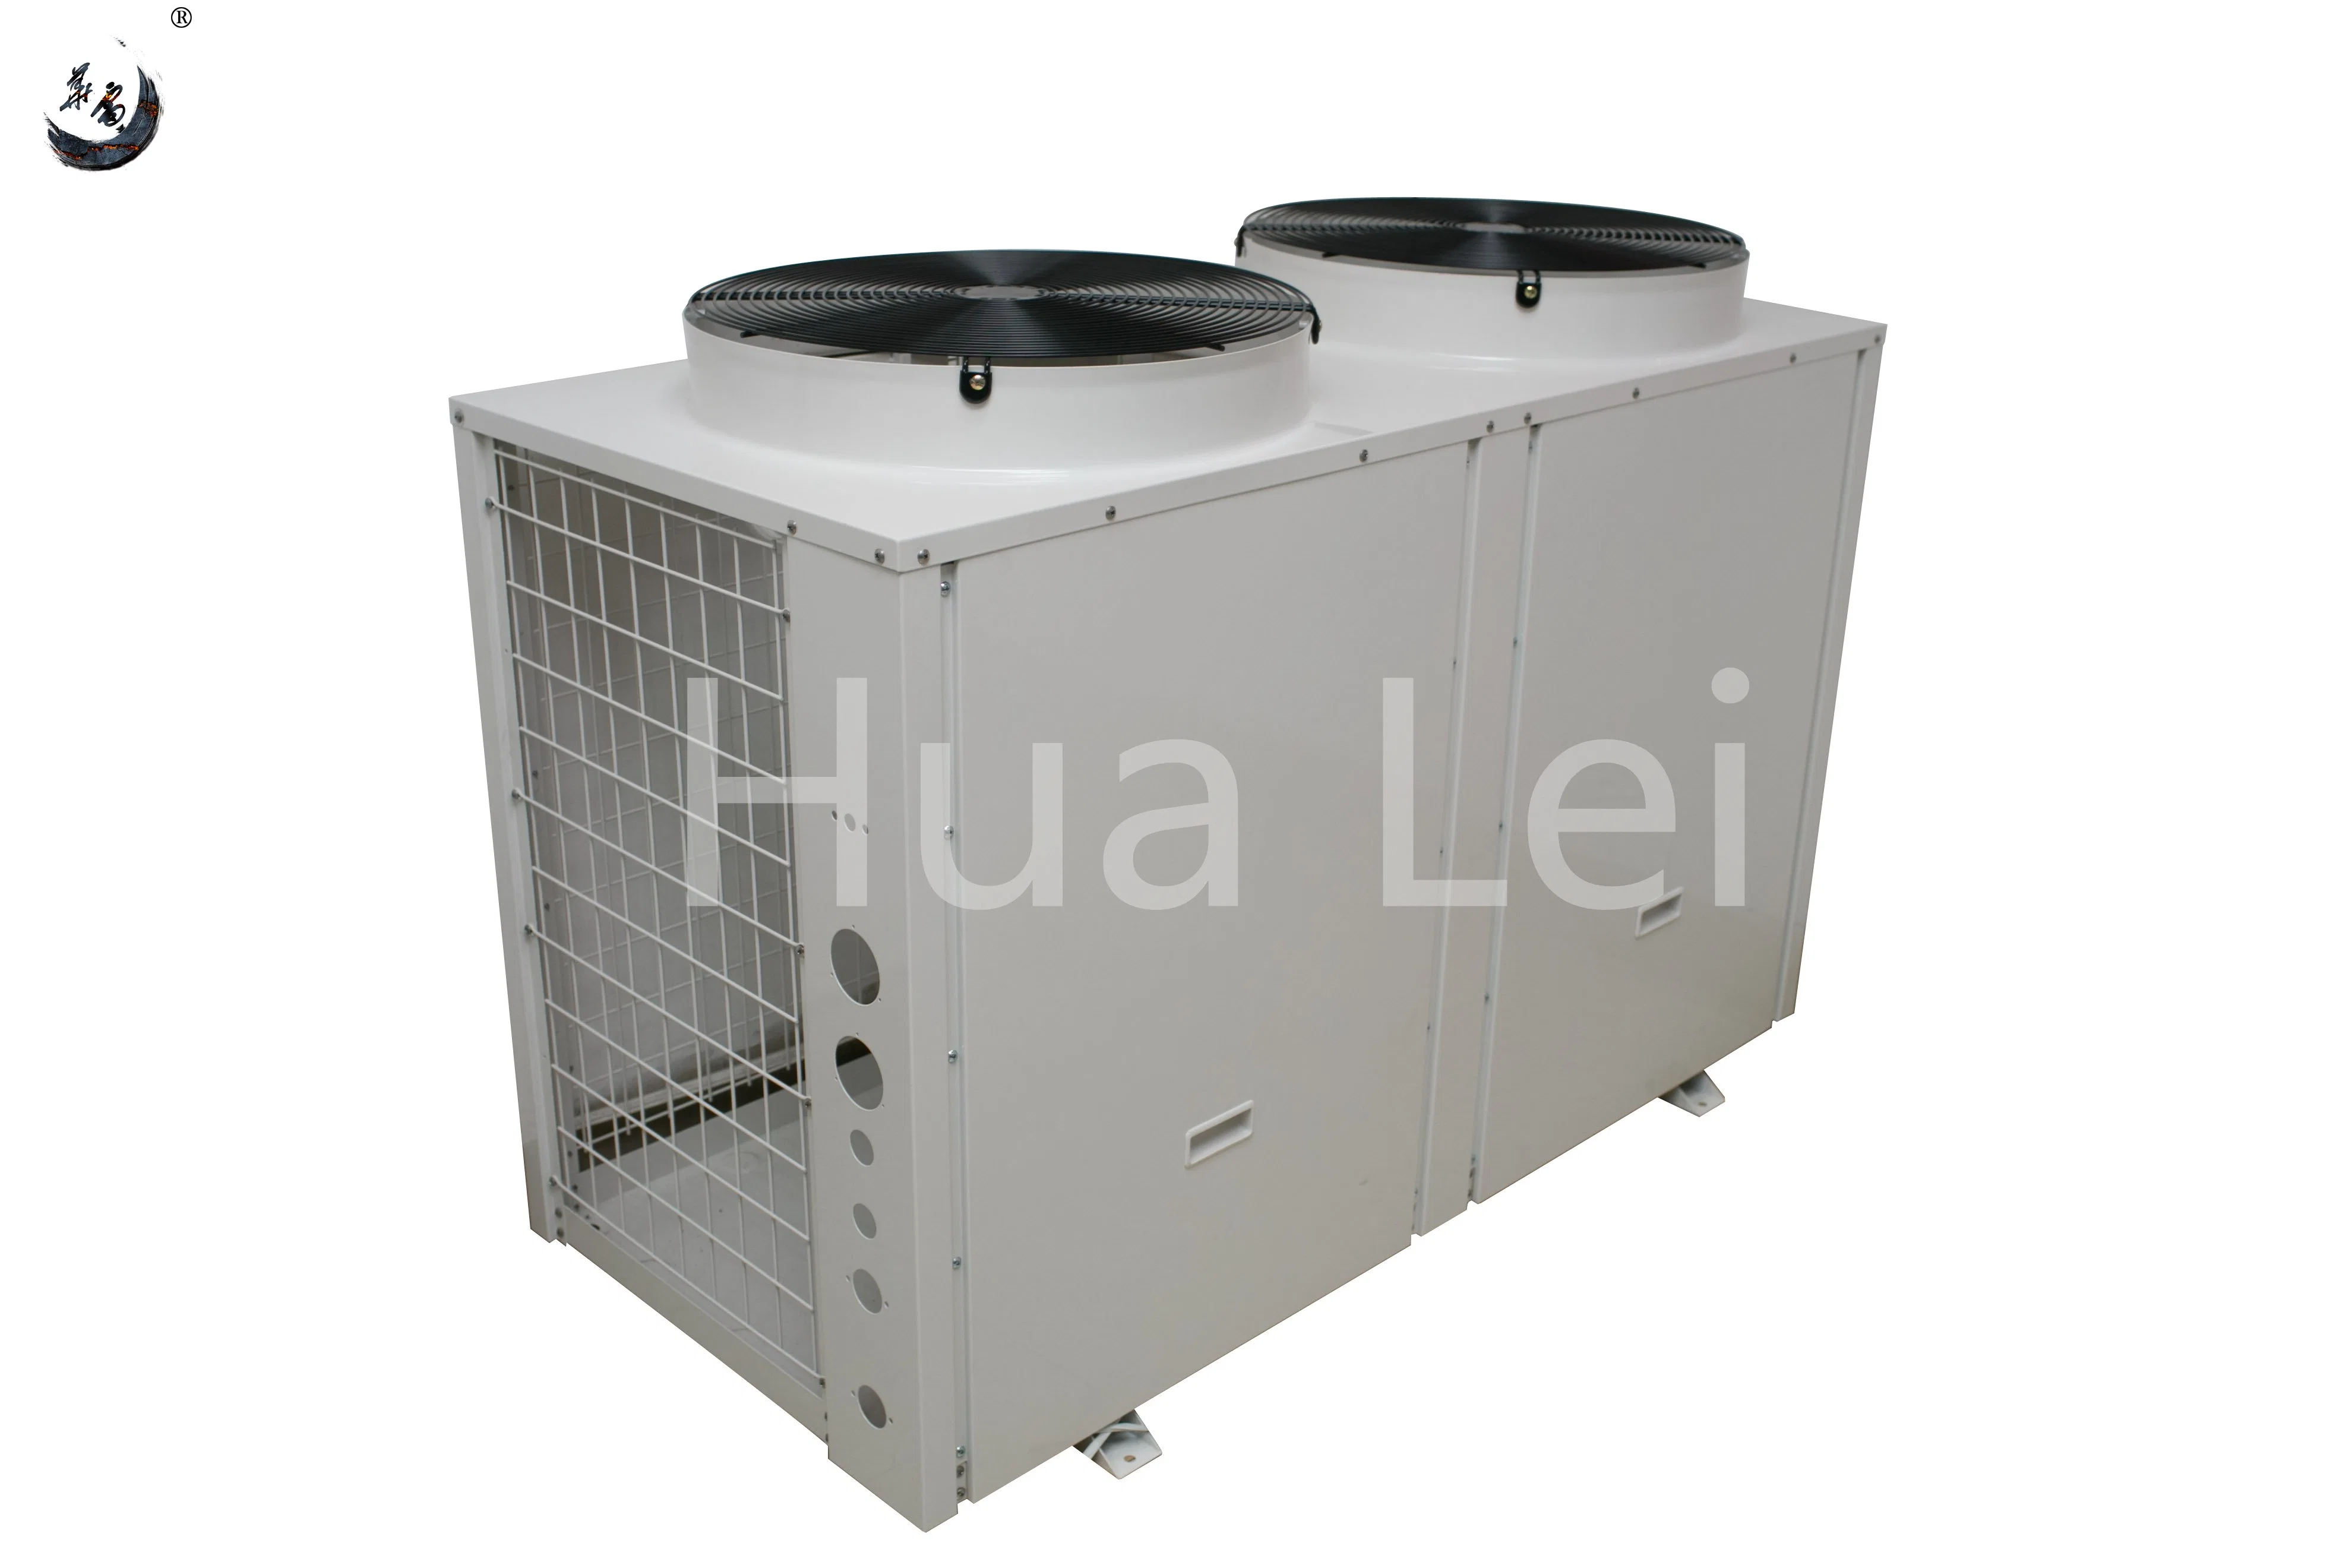 معدنية لورق مكيف الهواء المركزي لمصنعي المعدات الأصلية (OEM) الإطار المعدني للمصنع HVAC الجزء ستامبينج المعدات المعدنية المغلفنة شل المعالجة المعادن المنتج فابرتينج